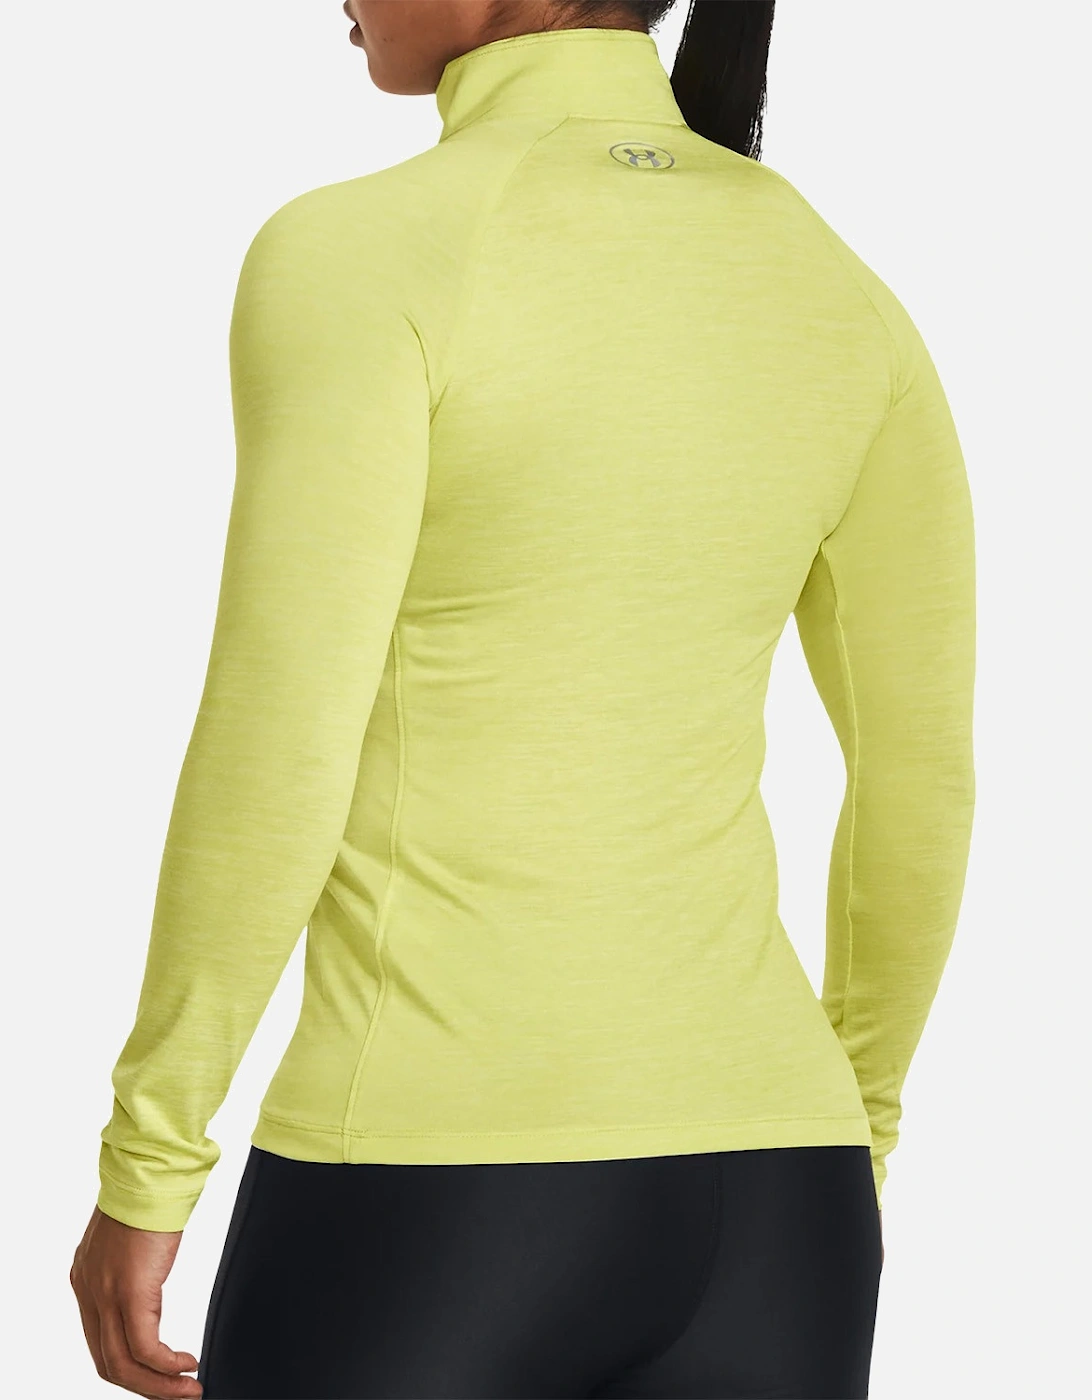 Womens Tech Twist 1/2 Zip Sweatshirt (Lime)